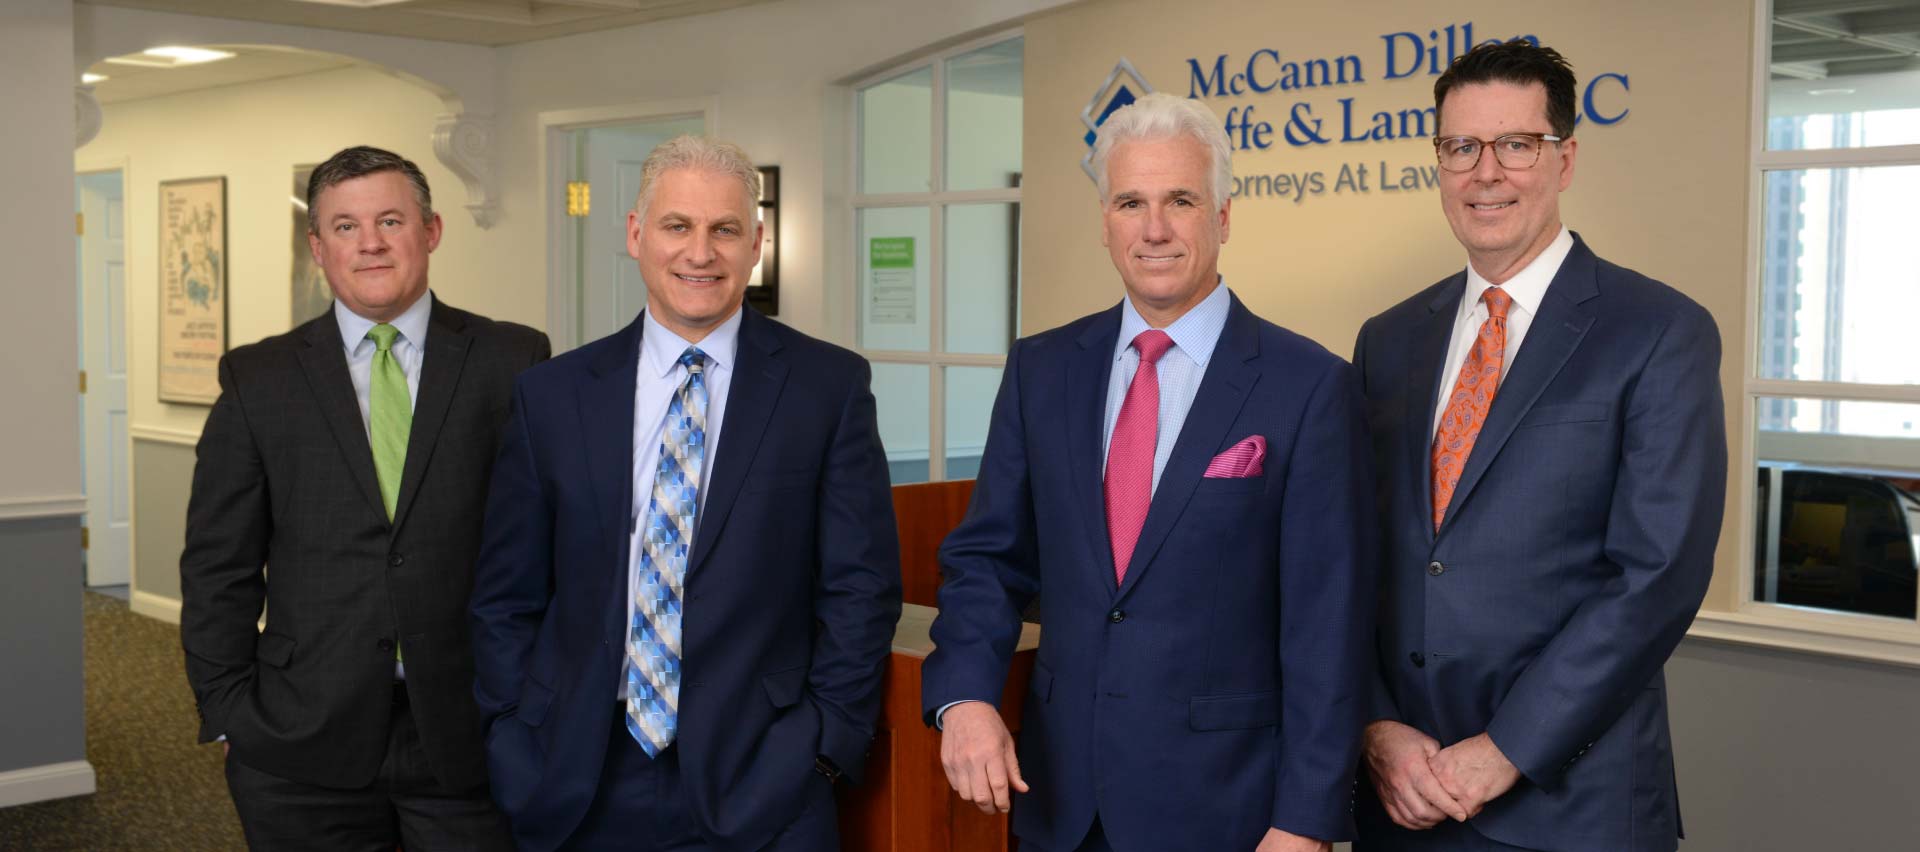 McCann Dillon Jaffe & Lamb, LLC